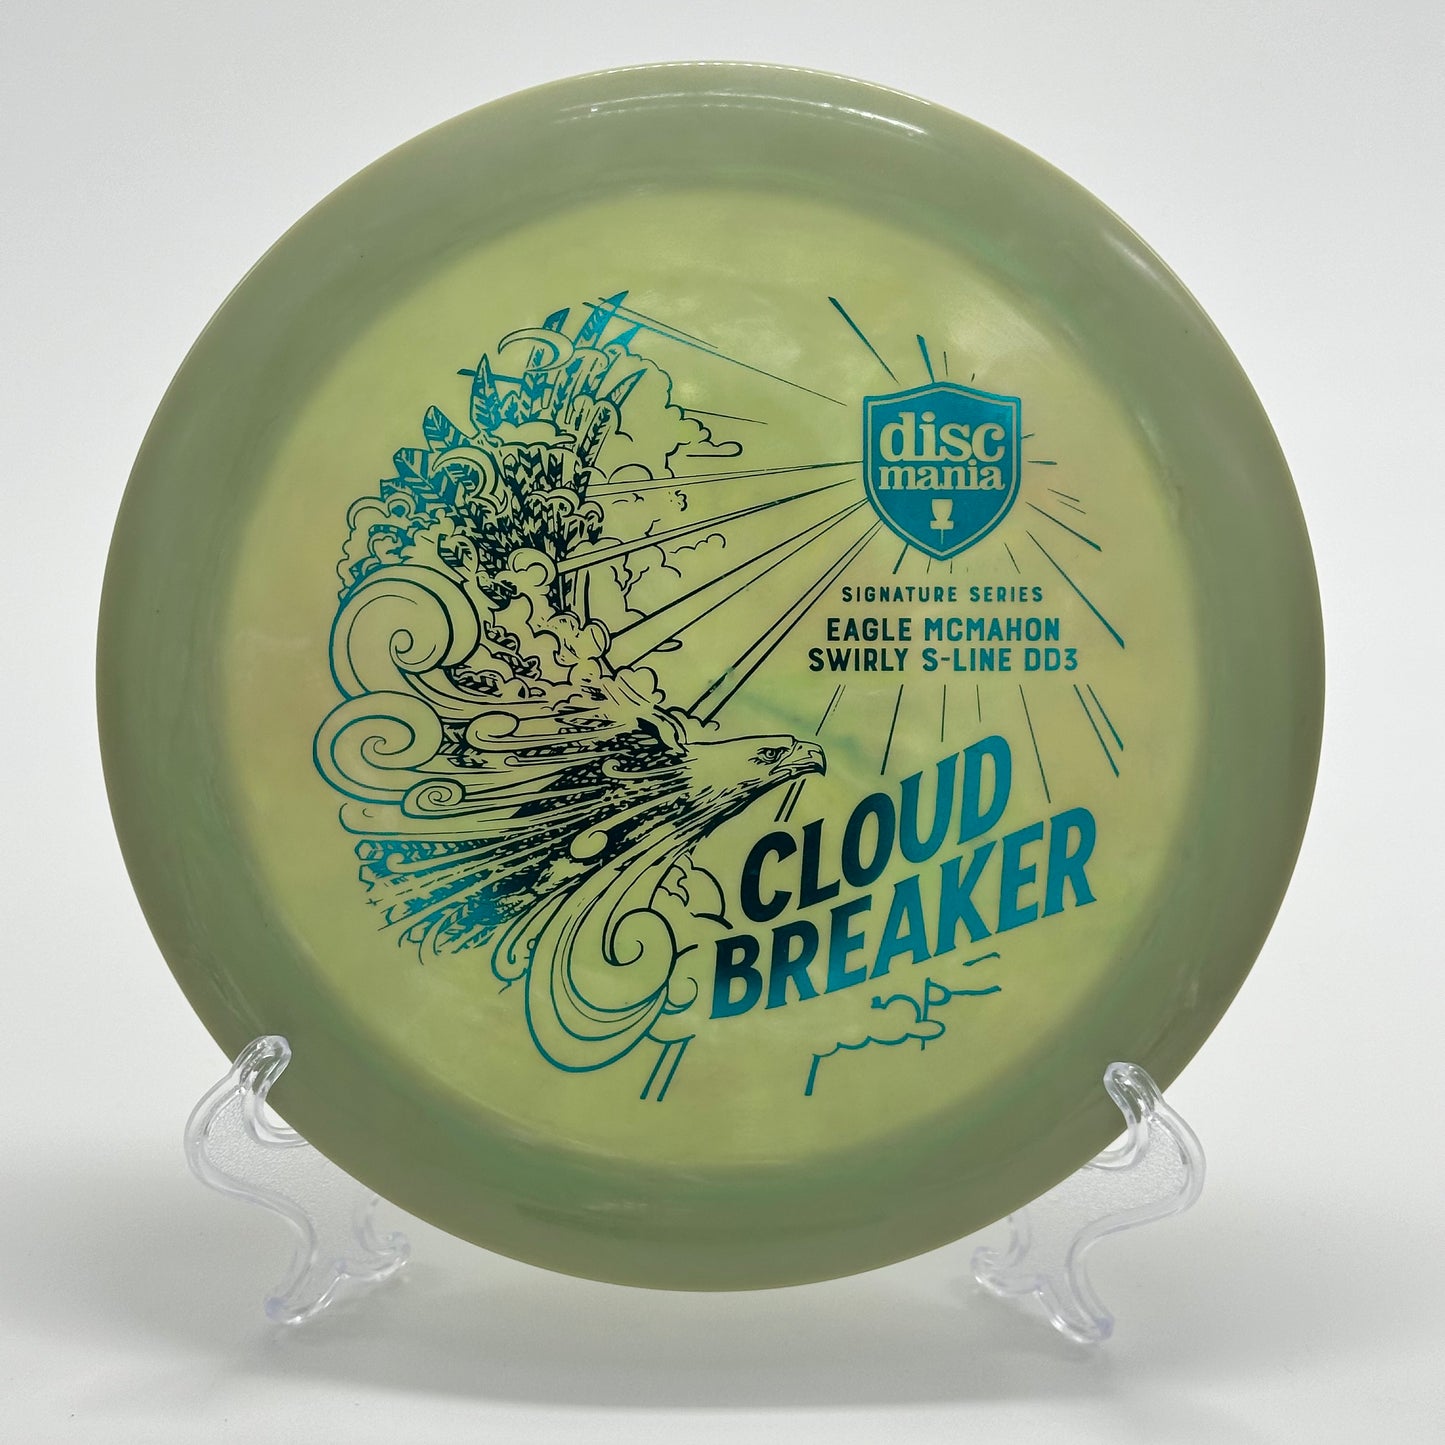 Discmania Cloudbreaker 1 | Eagle McMahon Swirly S-Line DD3 Signature Series (Innova EMB)